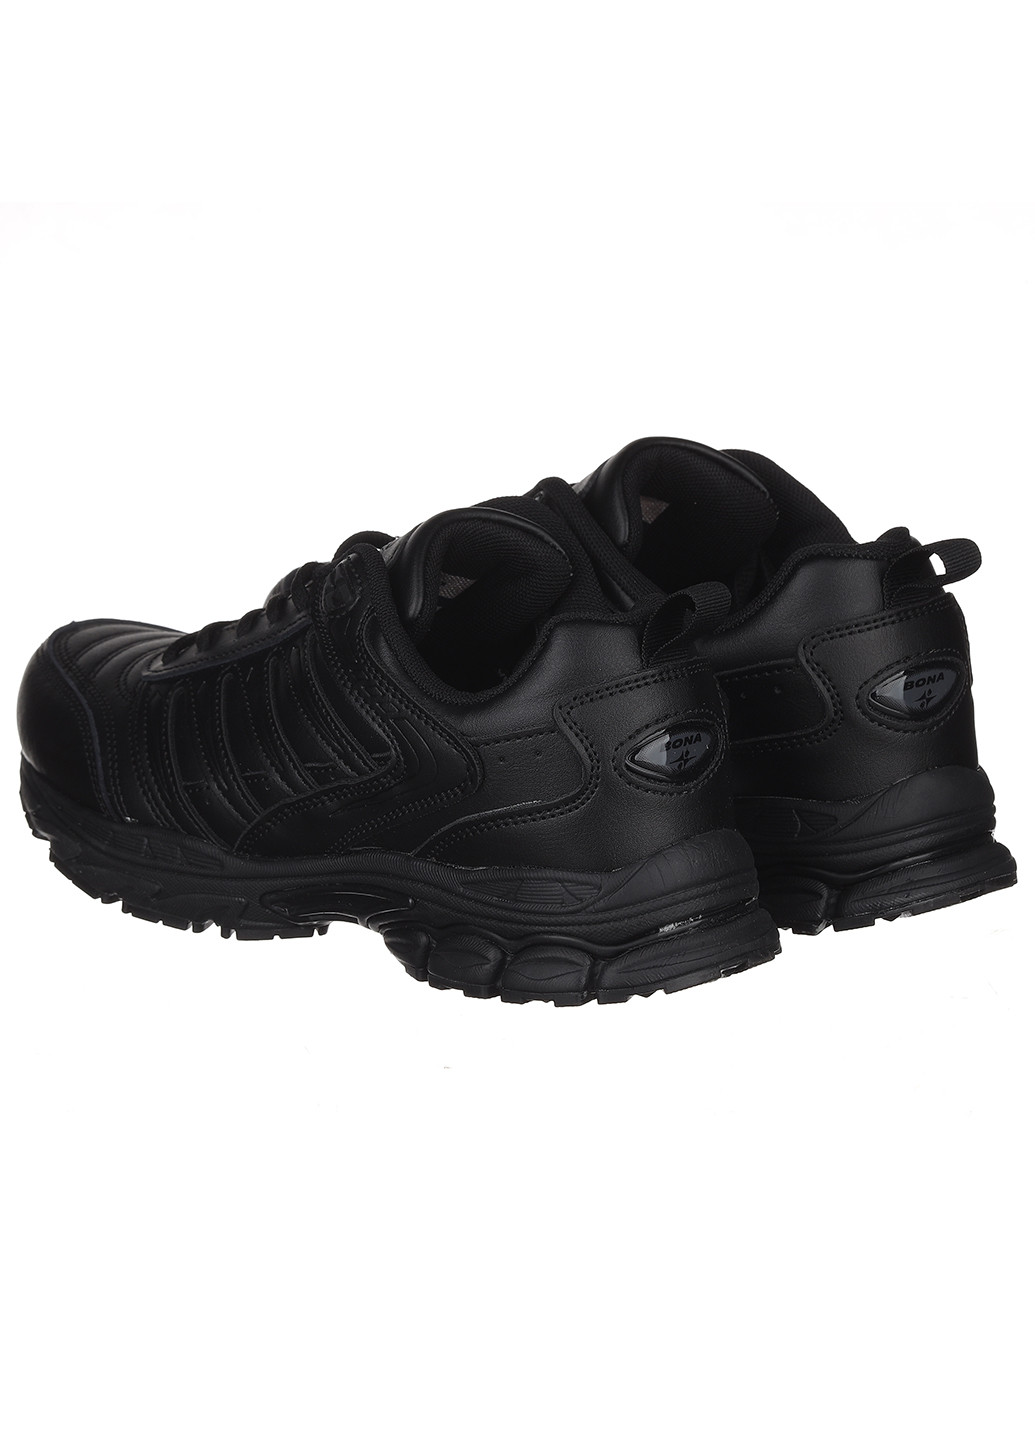 Черные демисезонные женские кроссовки 913v Bona